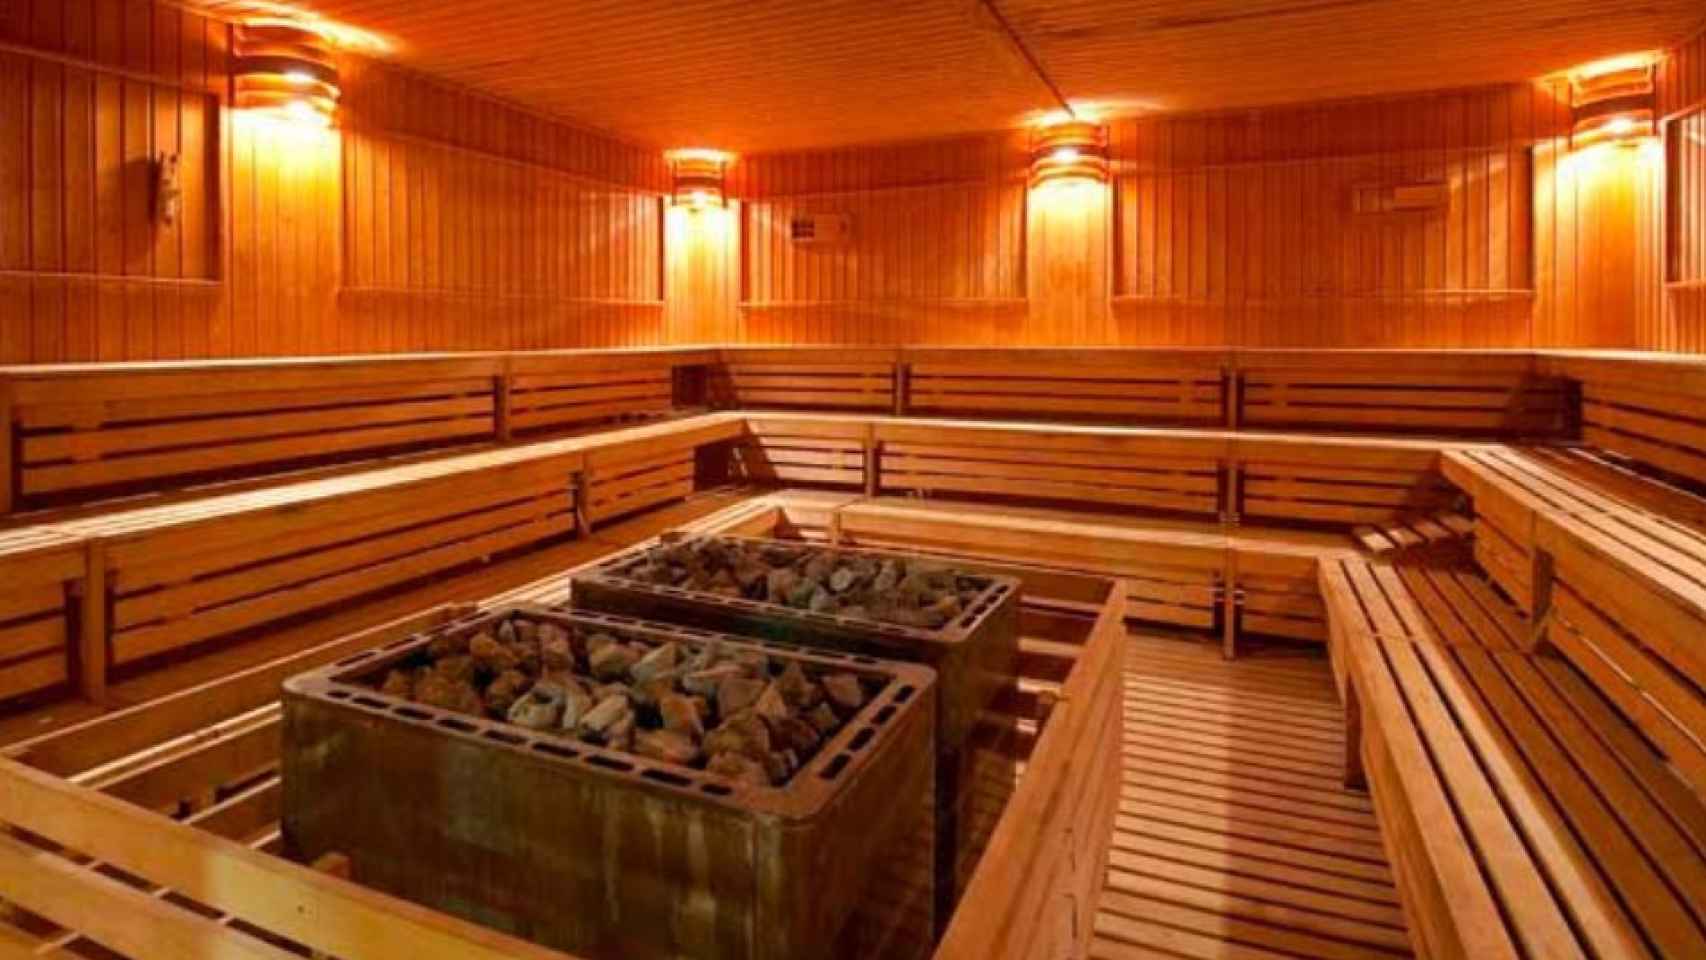 La sauna de este establecimiento en Estepona.